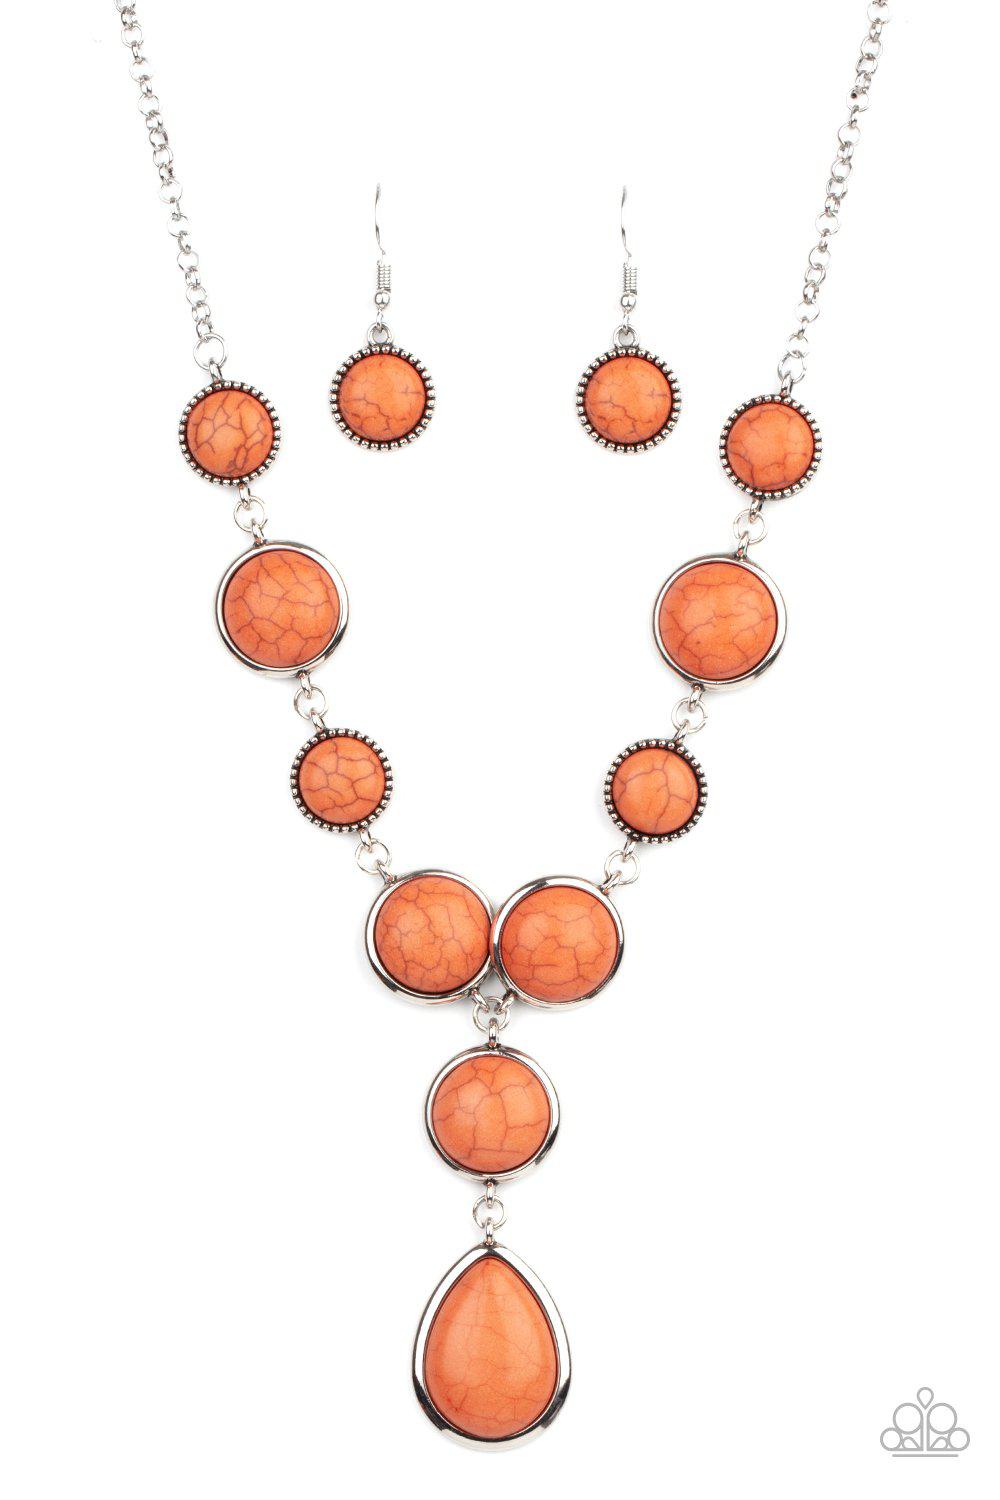 Terrestrial Trailblazer Orange Stone Necklace - Paparazzi Accessories- lightbox - CarasShop.com - $5 Jewelry by Cara Jewels